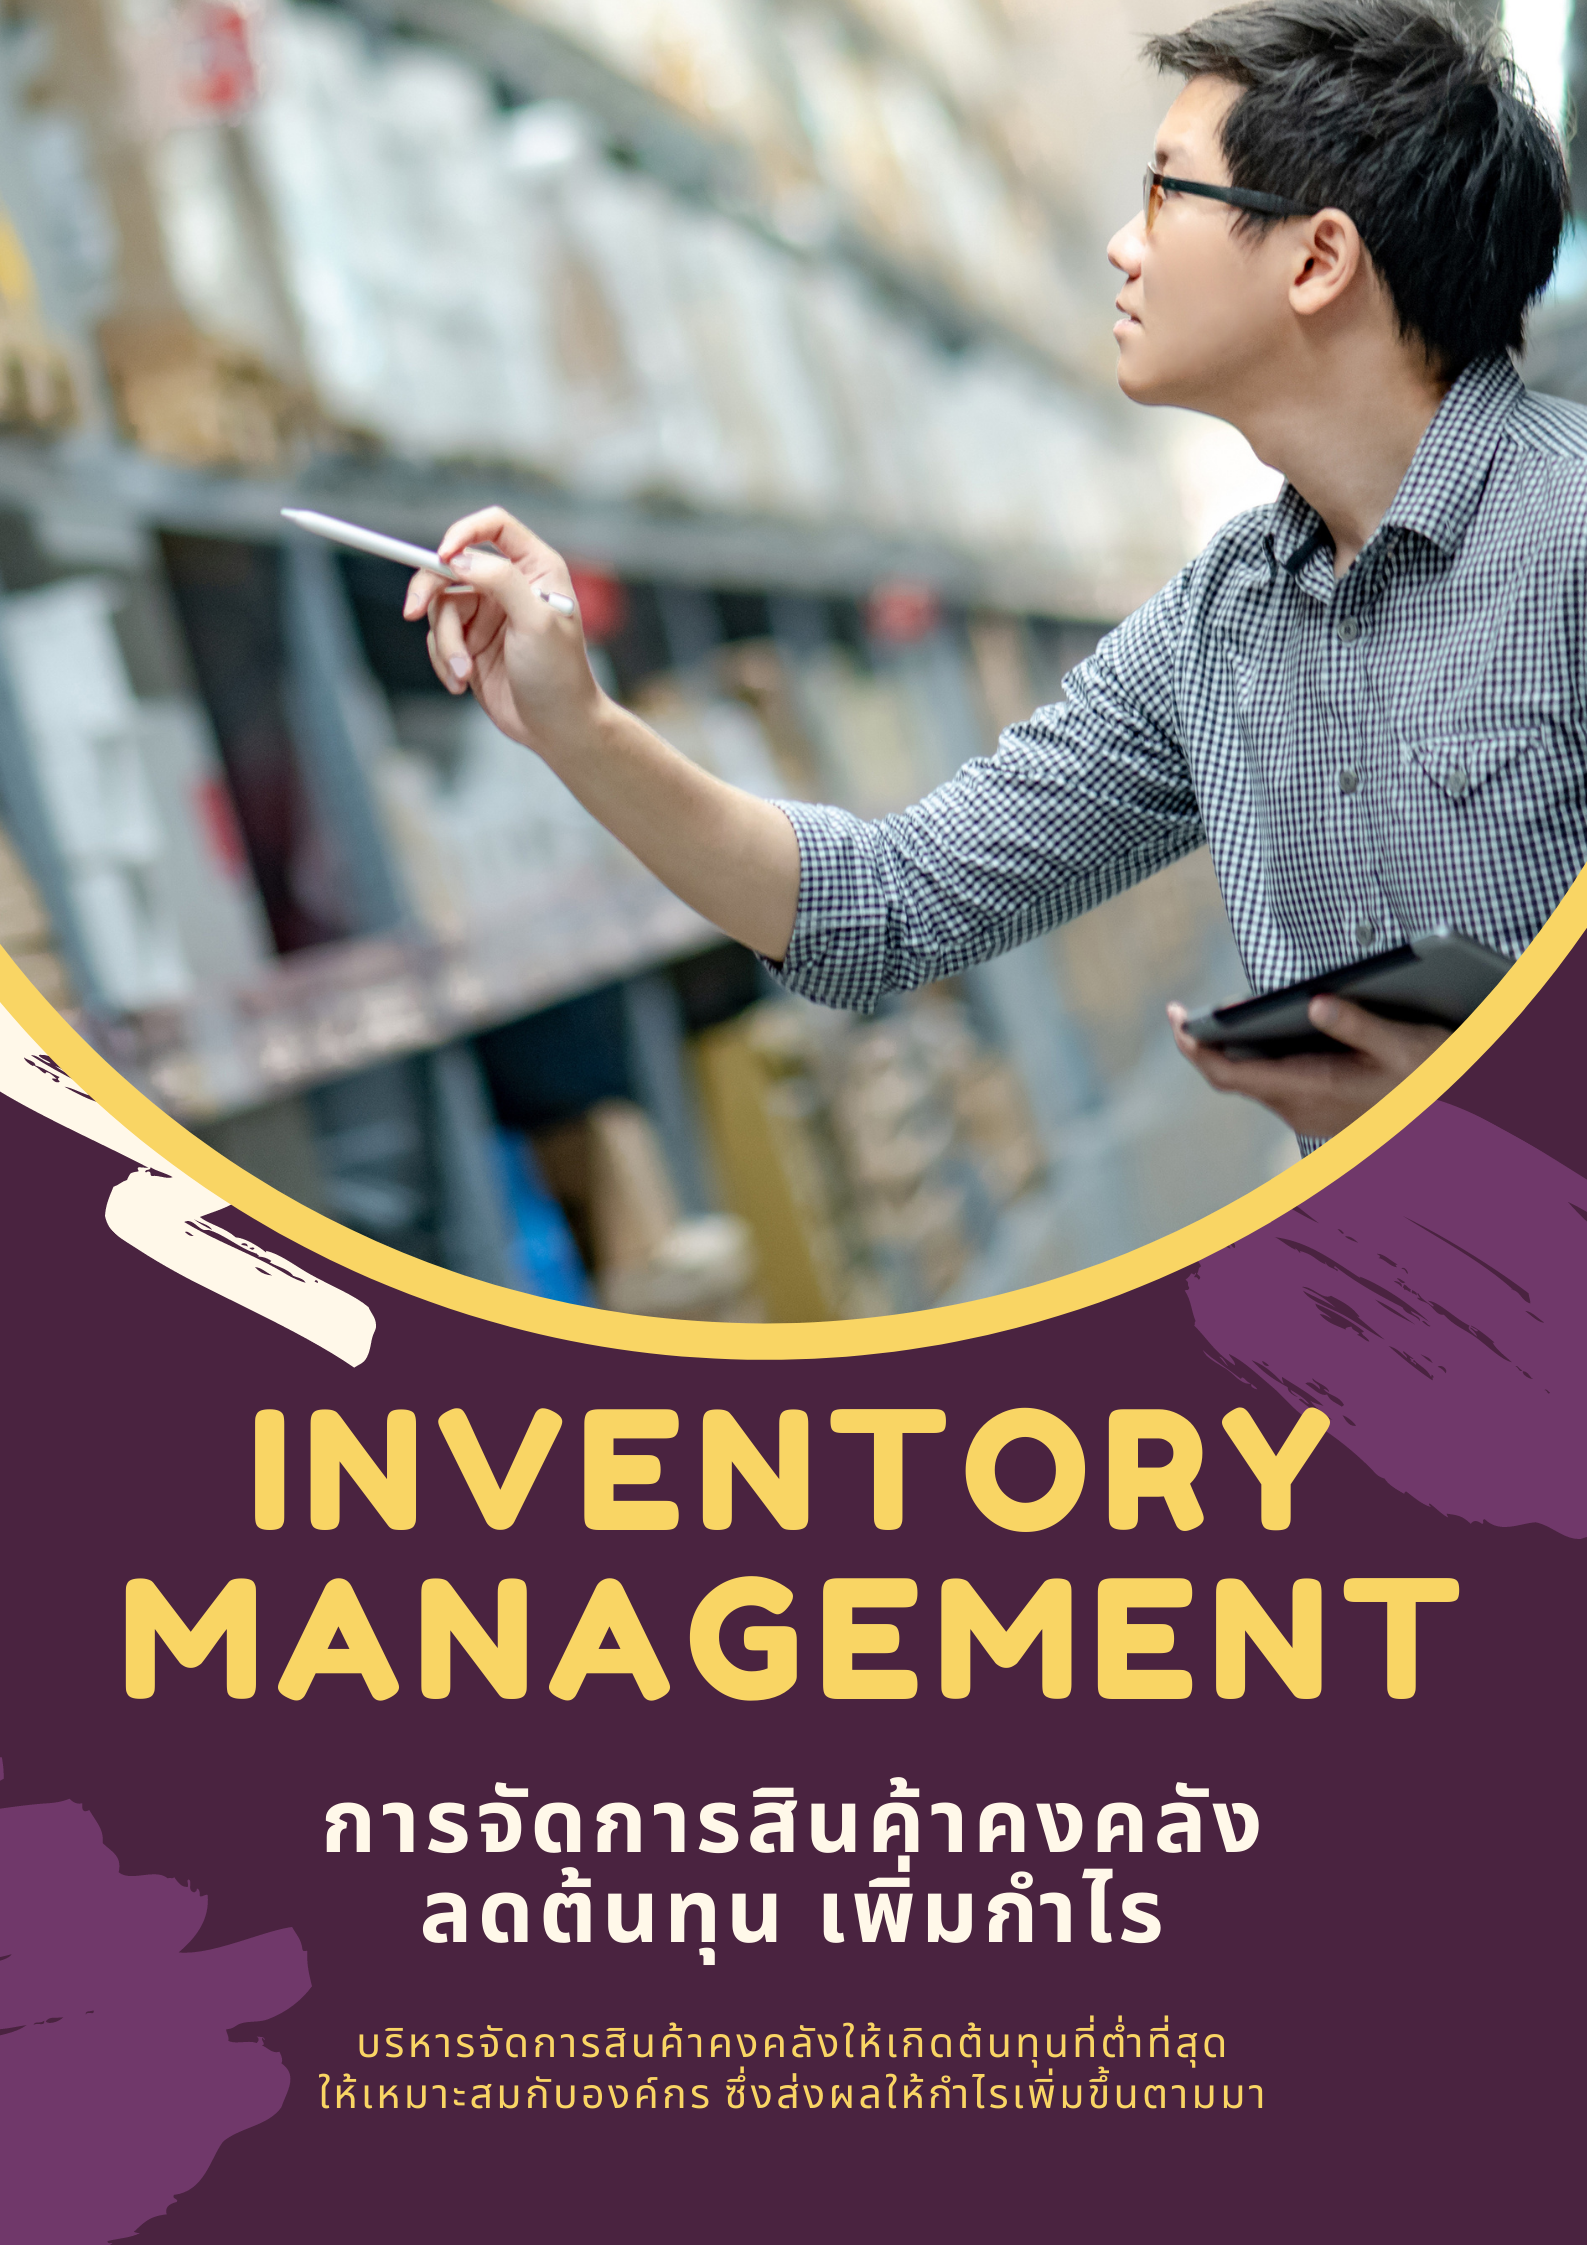 อบรมออนไลน์ผ่าน Zoom หลักสูตร อบรมออนไลน์ : การจัดการสินค้าคงคลัง (Inventory Management) : ต้นทุนลด กำไรเพิ่ม (หลักสูตร 6 ชัวโมง)